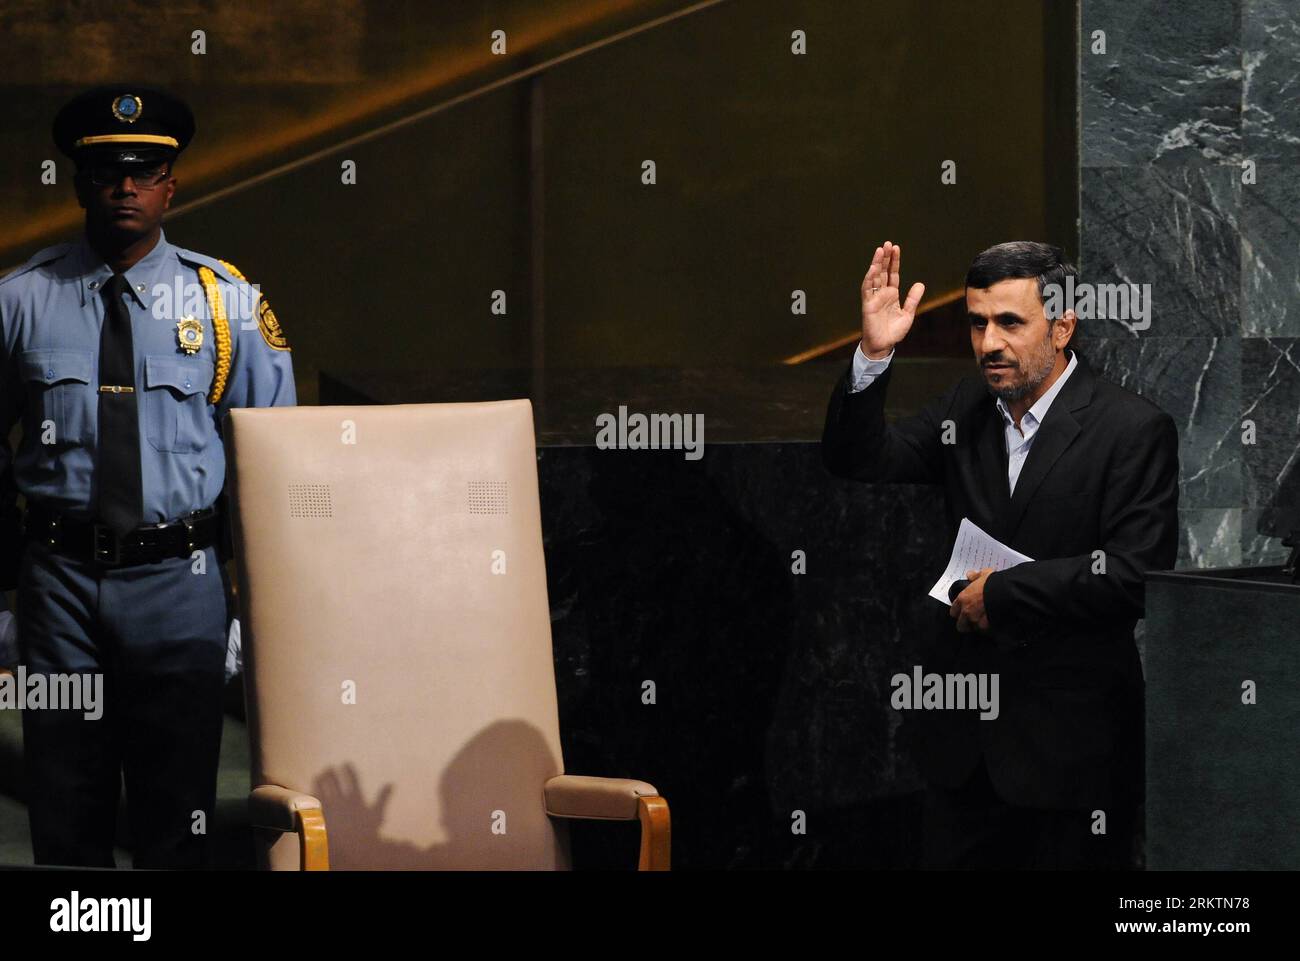 Bildnummer : 58518917 Datum : 26.09.2012 Copyright : imago/Xinhua (120926) -- NEW YORK, 26 septembre 2012 (Xinhua) -- le président iranien Mahmoud Ahmadinejad(R) fait signe après avoir pris la parole lors du débat général de la 67e session de l'Assemblée générale des Nations Unies au siège des Nations Unies à New York, aux États-Unis, le 26 septembre 2012. Ahmadinejad a accusé mercredi certaines puissances hégémoniques d’intimider son pays, citant des menaces militaires d’Israël. (Xinhua/Shen Hong) ONU-NEW YORK-ASSEMBLÉE GÉNÉRALE-DÉBAT GÉNÉRAL-IRAN PUBLICATIONxNOTxINxCHN People Politik UNO Generalversammlung x0x xmb 2012 quer 58518917 DAT Banque D'Images